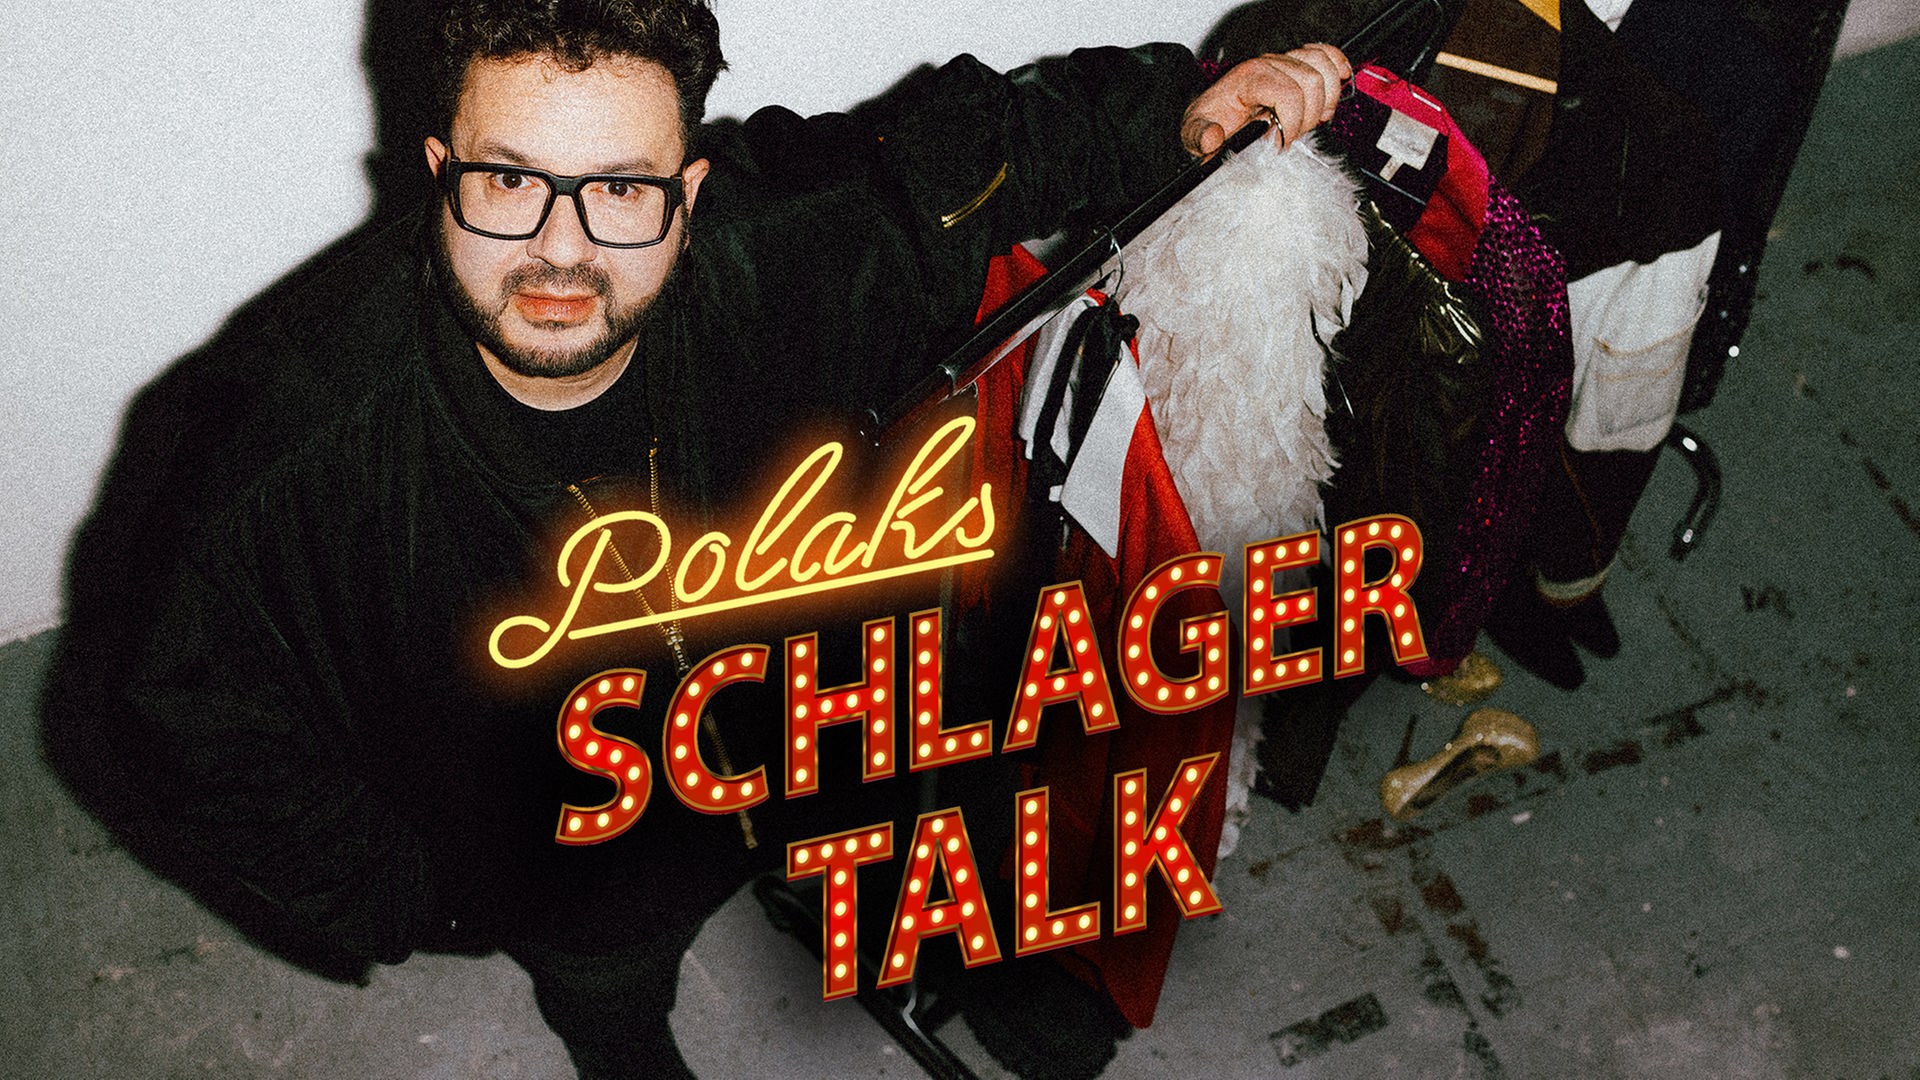 Polaks Schlagertalk: Podcast-Host Oliver Polak steht neben einer Garderobenstange mit bunten Bühnenoutfits wie Federboa und Glitzeranzügen